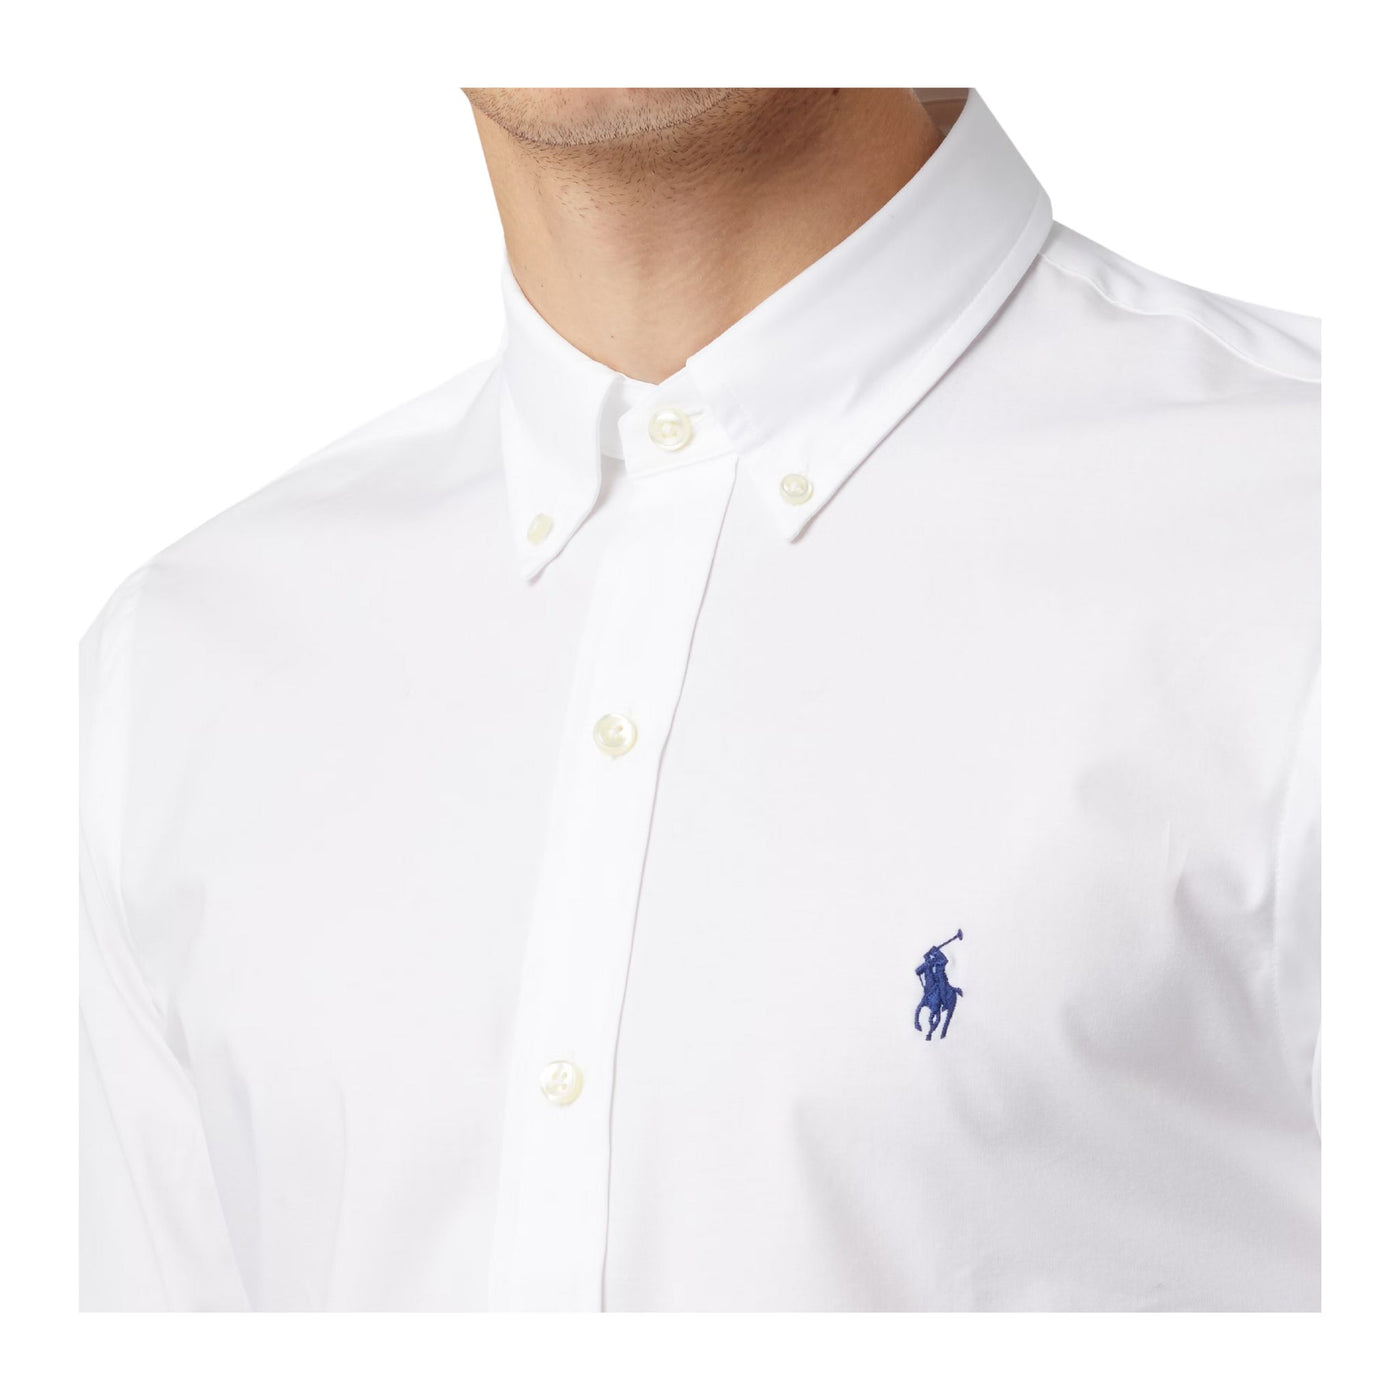 Dettaglio camicia da uomo bianca,con logo ricamato Polo Ralph Lauren,con chiusura bottoni e colletto classico.